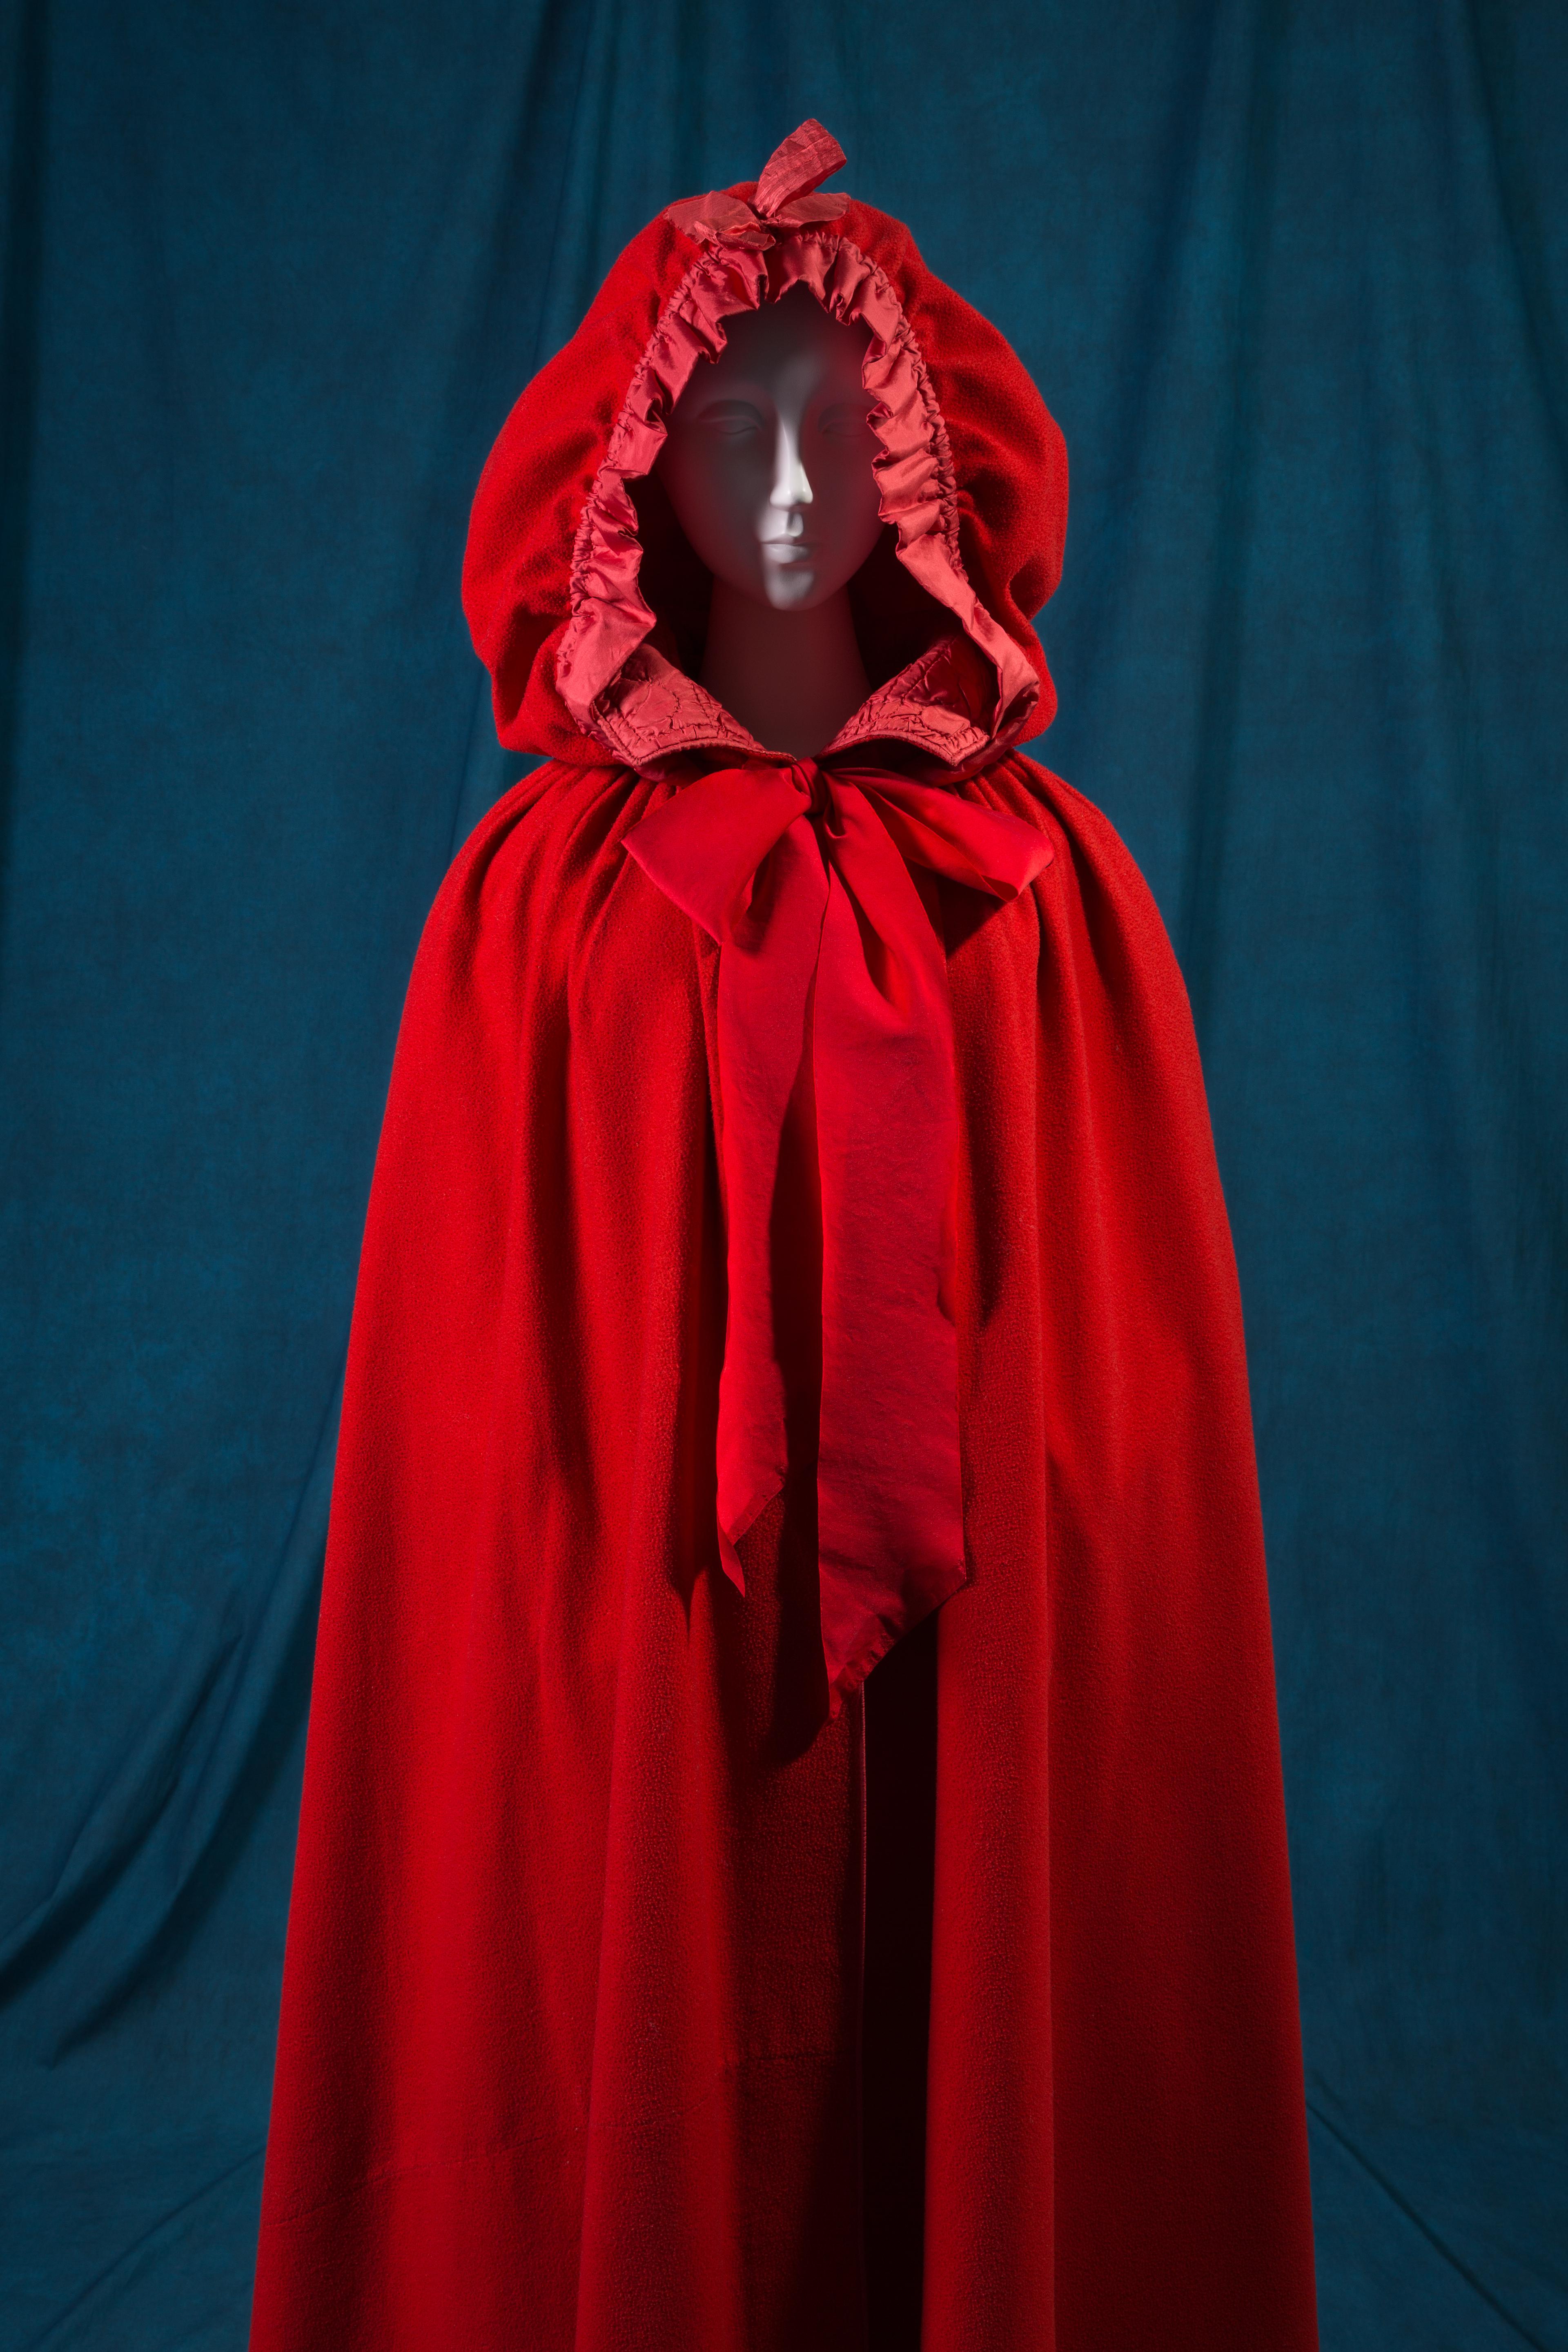 Una cappa rossa risalente al 18esimo secolo che rimanda a 'Cappuccetto Rosso', photograph © The Museum at FIT